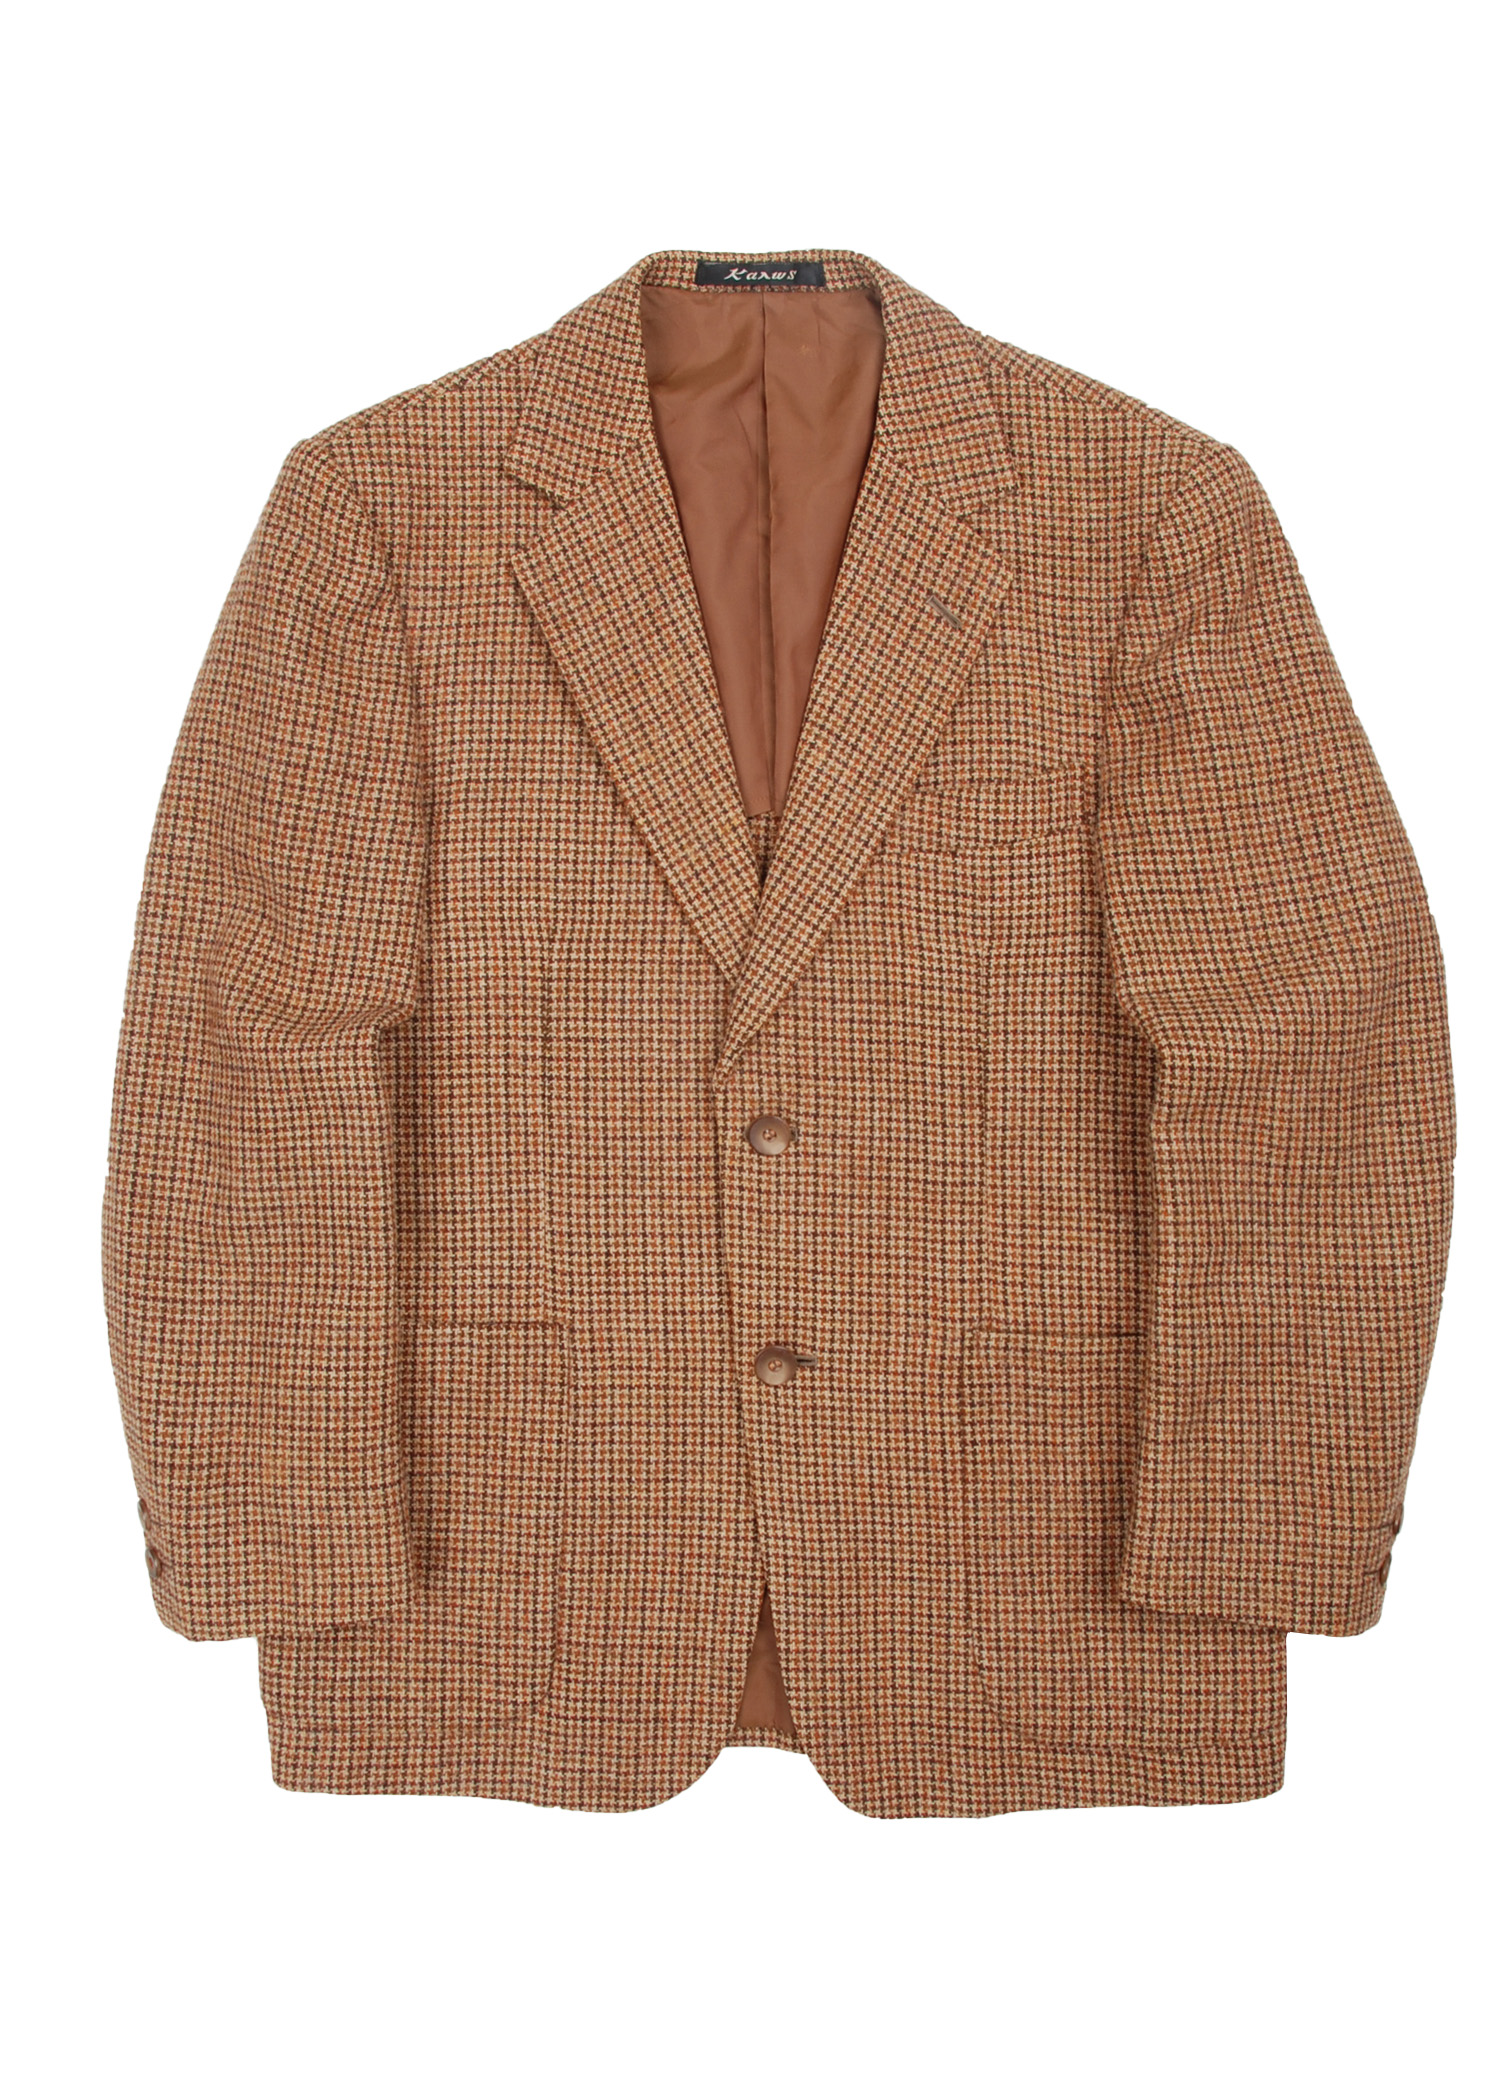 select vintage : tweed jacket